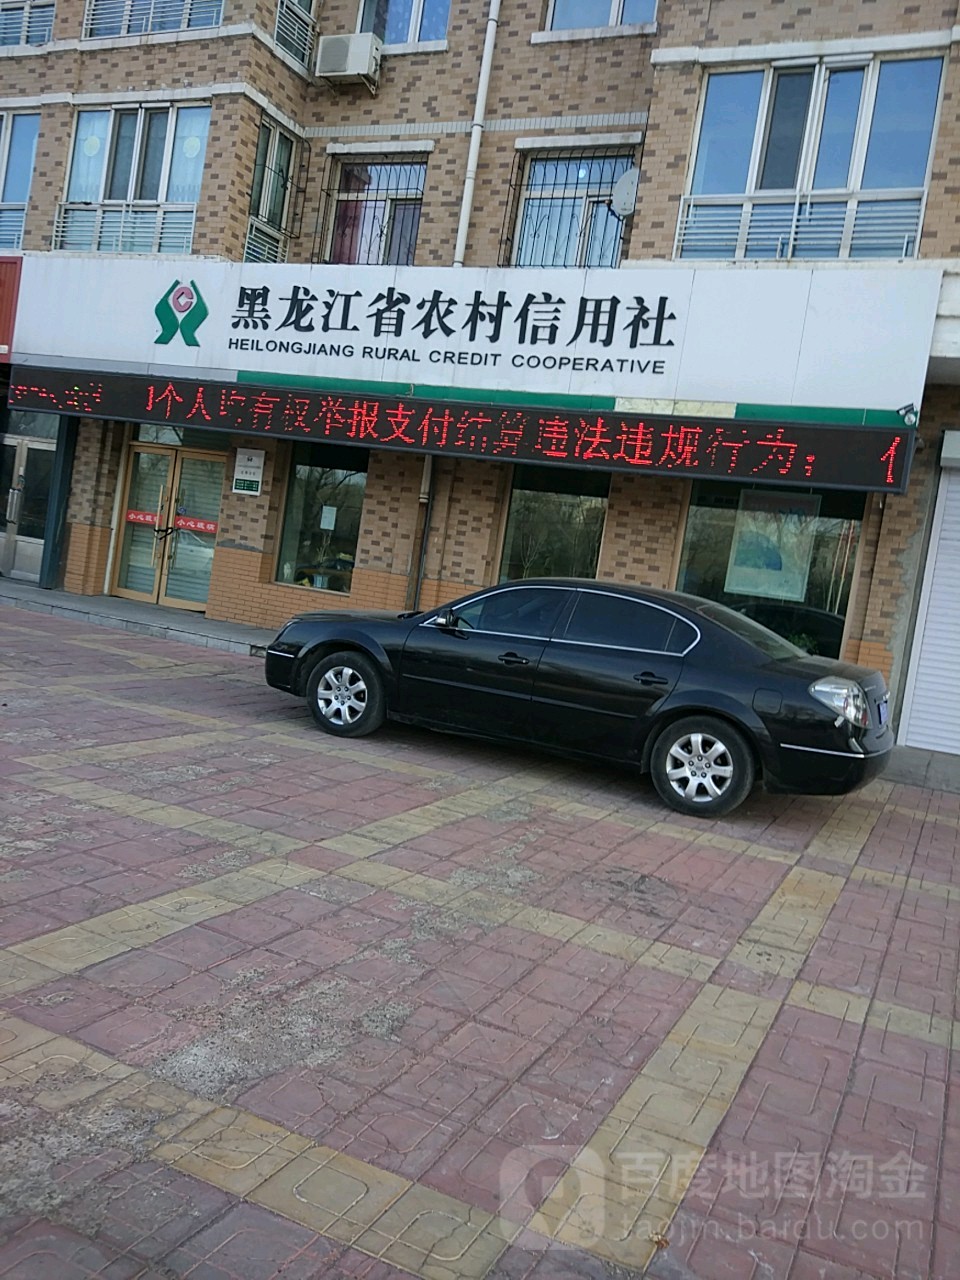 黑龍江省農村信用社(向陽大街店)